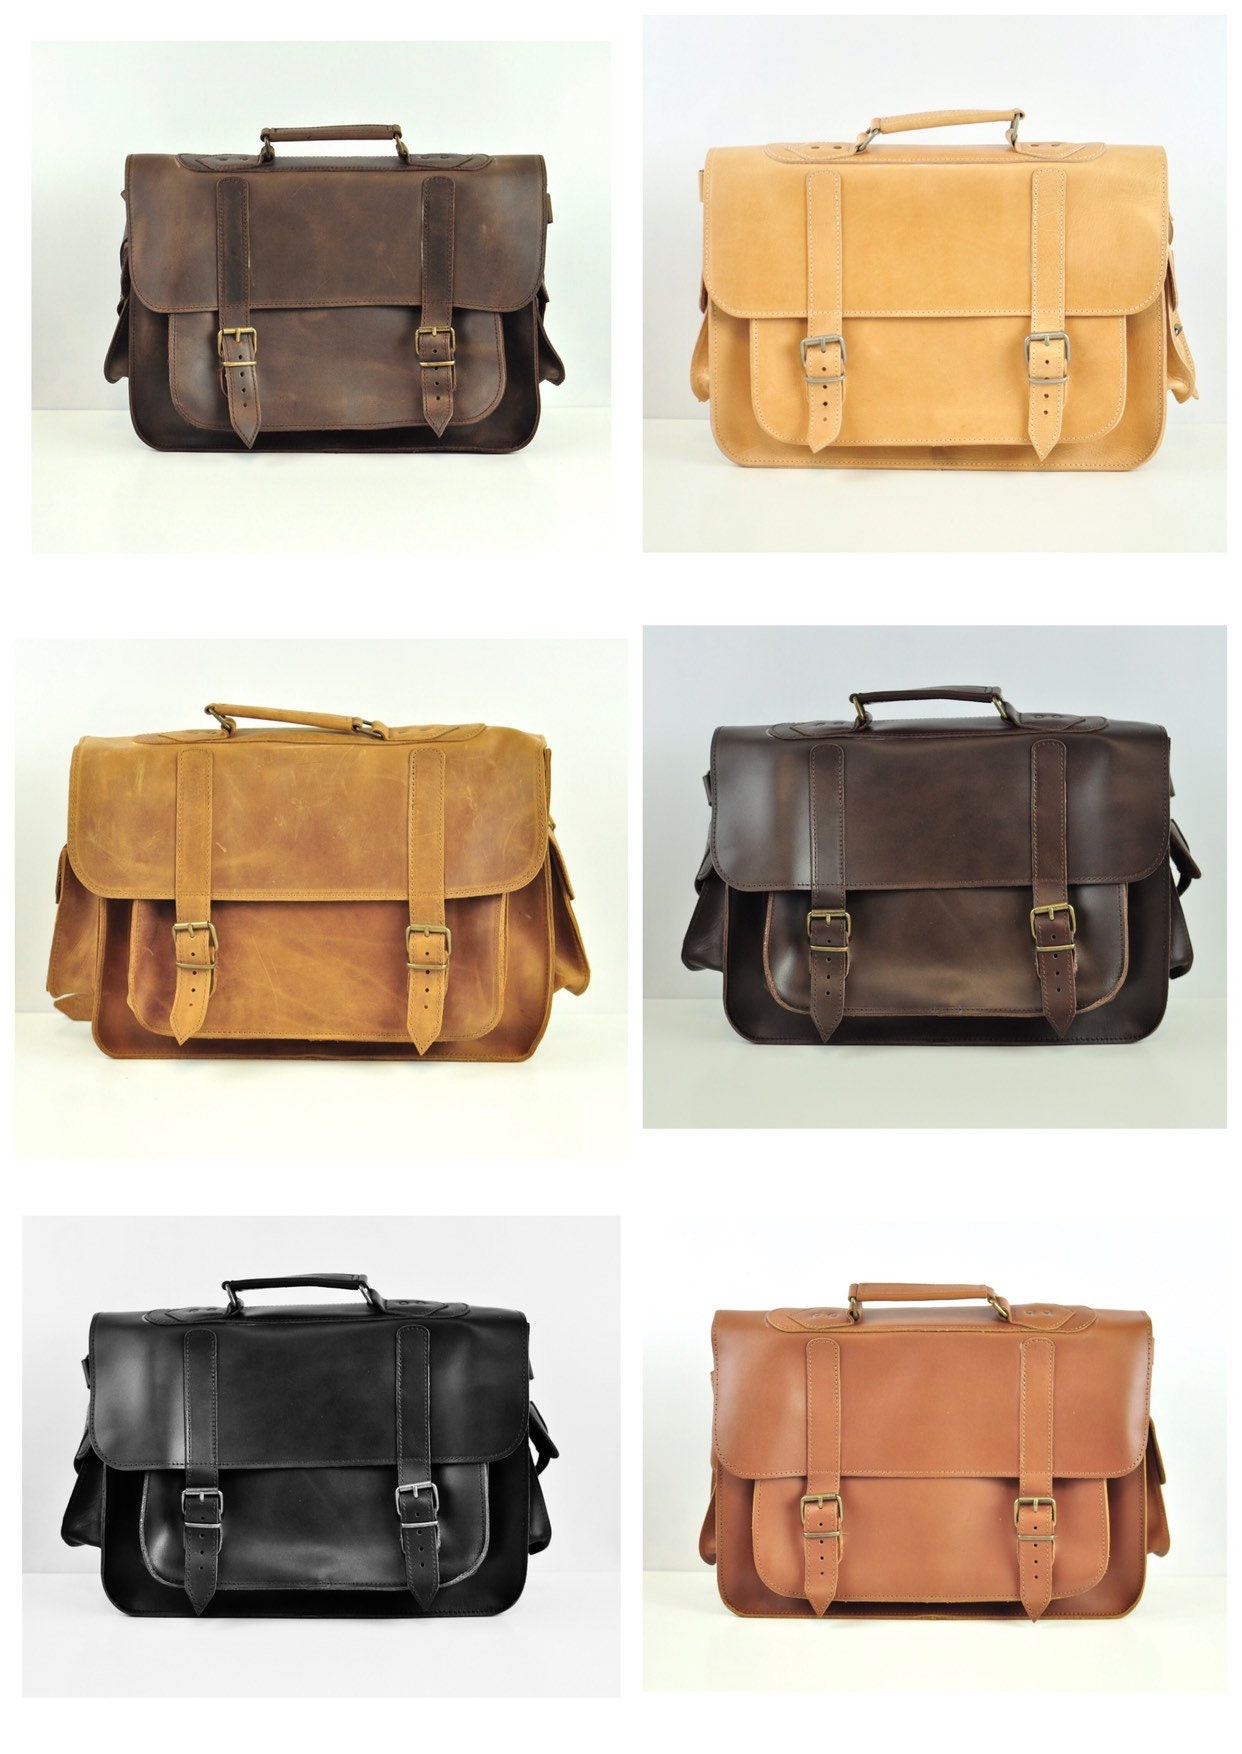 SALE 20% Premium L leather satchel Messenger bag Shoulder | Etsy